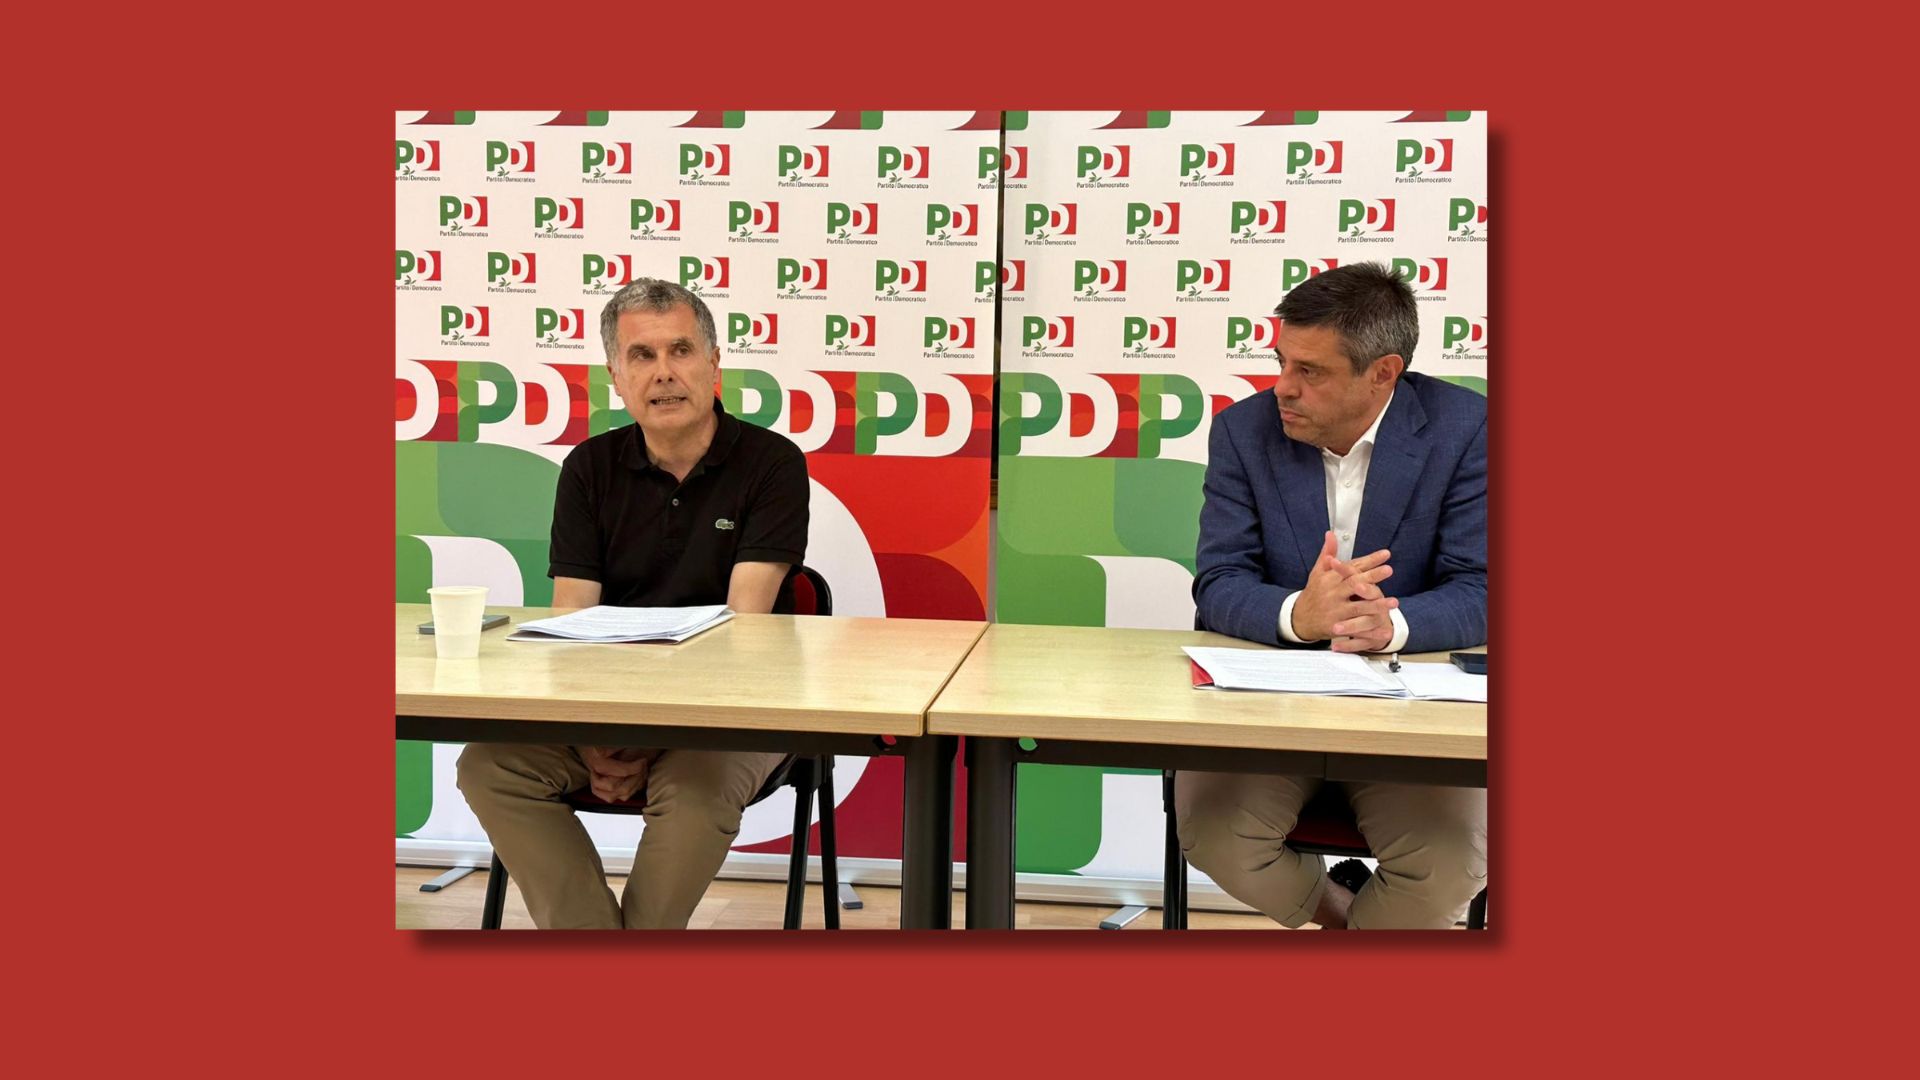 Quasi 200 emendamenti del PD al DDL Calderoli: «L’autonomia differenziata aumenta la distanza Nord-Sud. Per la Sardegna danni irreparabili»